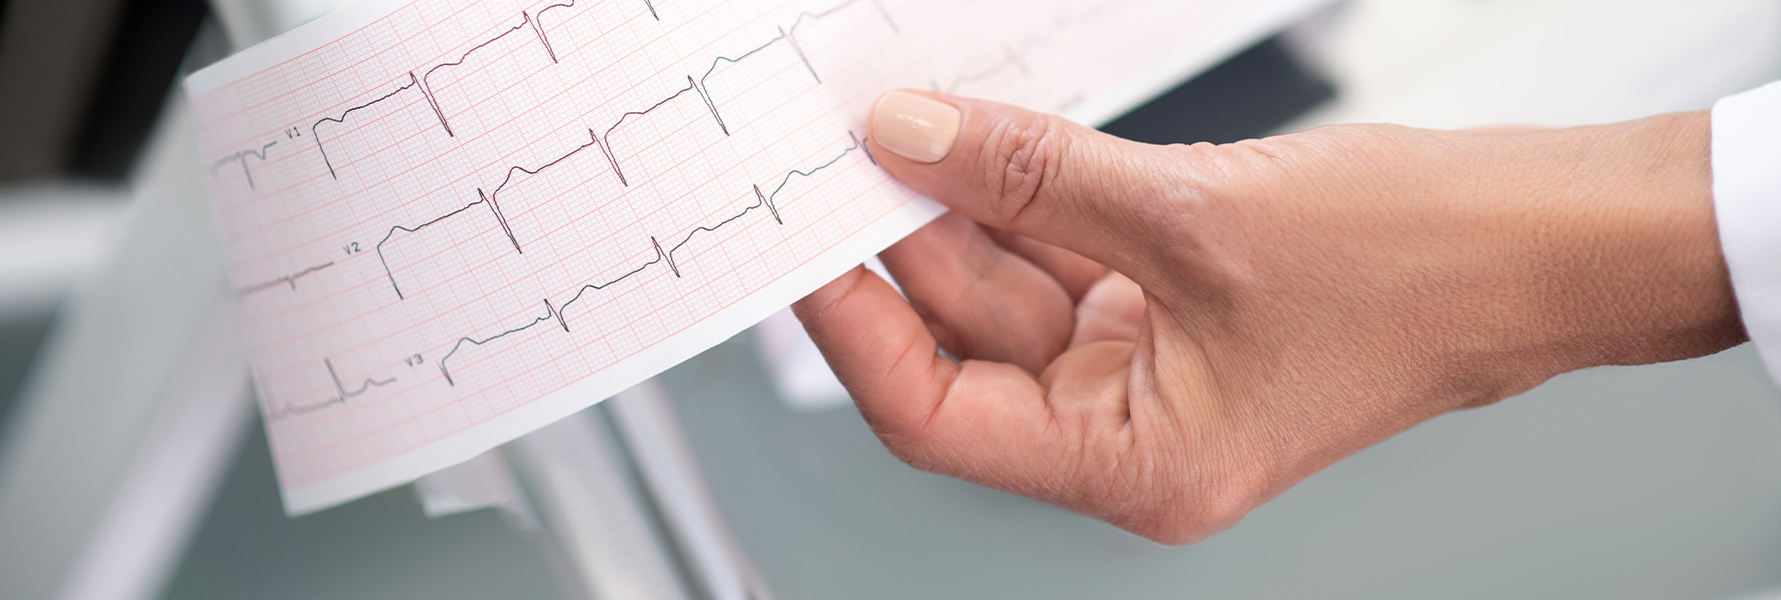 Badanie elektrokardiograficzne spoczynkowe i wysiłkowe (EKG nieprawidłowe)